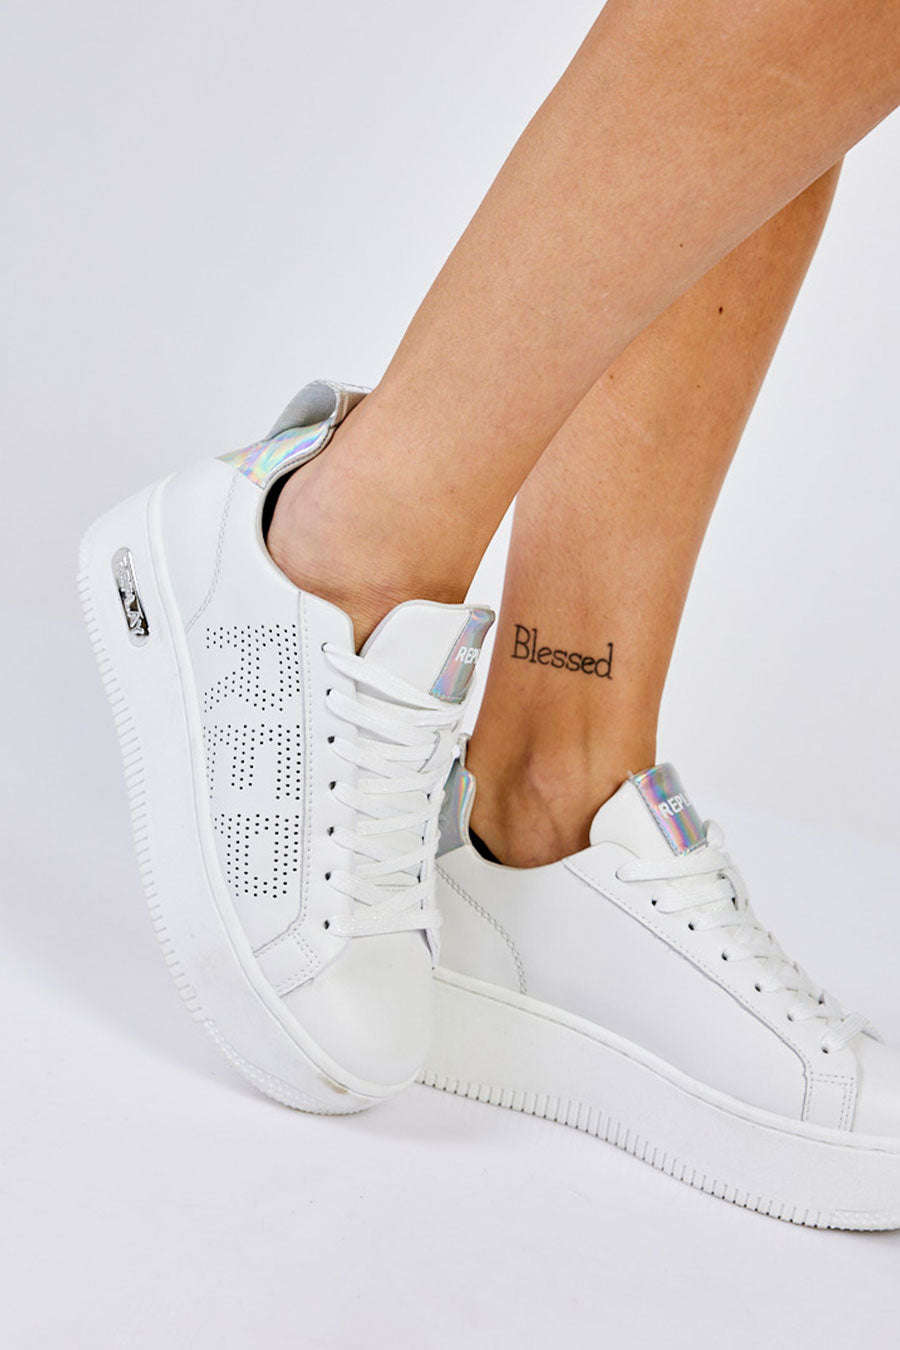 ריפליי נעלי סניקרס פלטפורמה Epic High בצבע לבן לנשים-Replay-36-נאקו